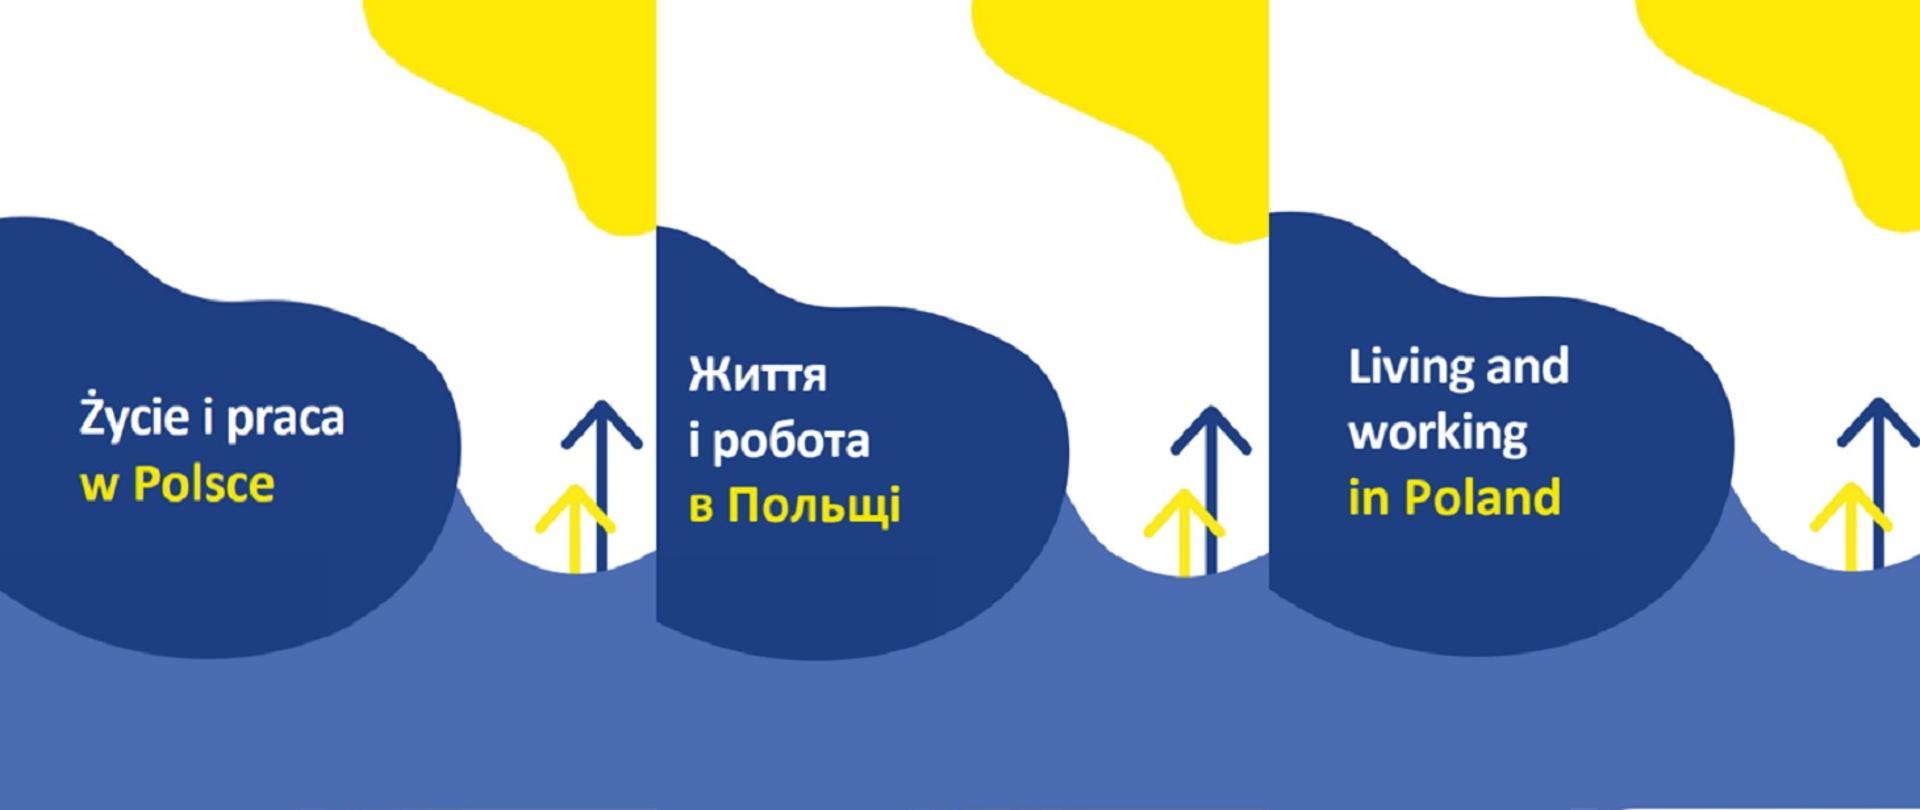 Grafika w trzech językach o treści "Życie i praca w Polsce"